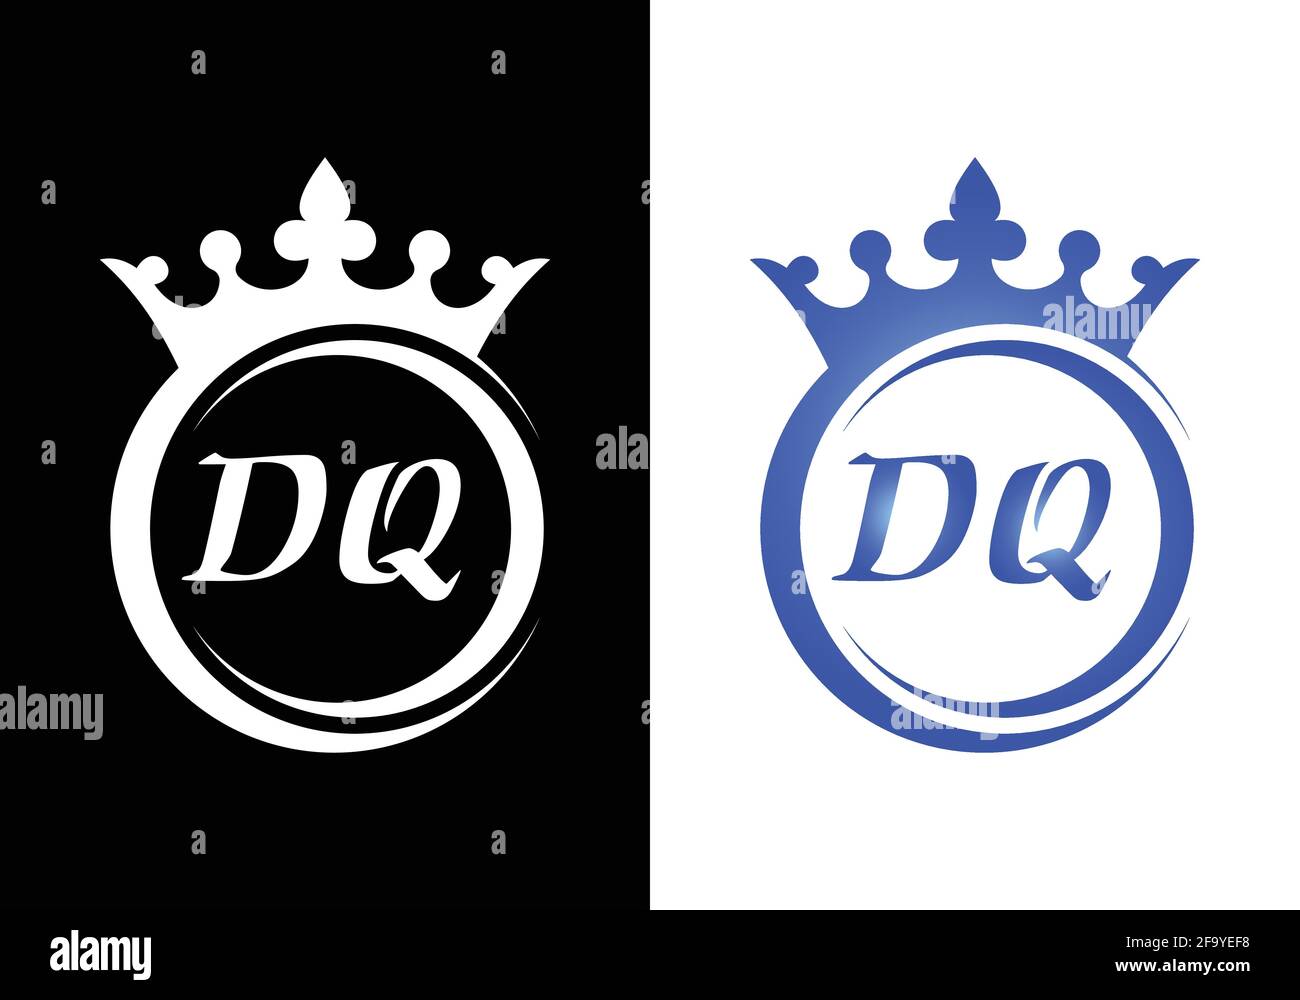 Lettera della corona del re lettera D Q per il disegno dell'icona del logo dell'azienda. Illustrazione Vettoriale